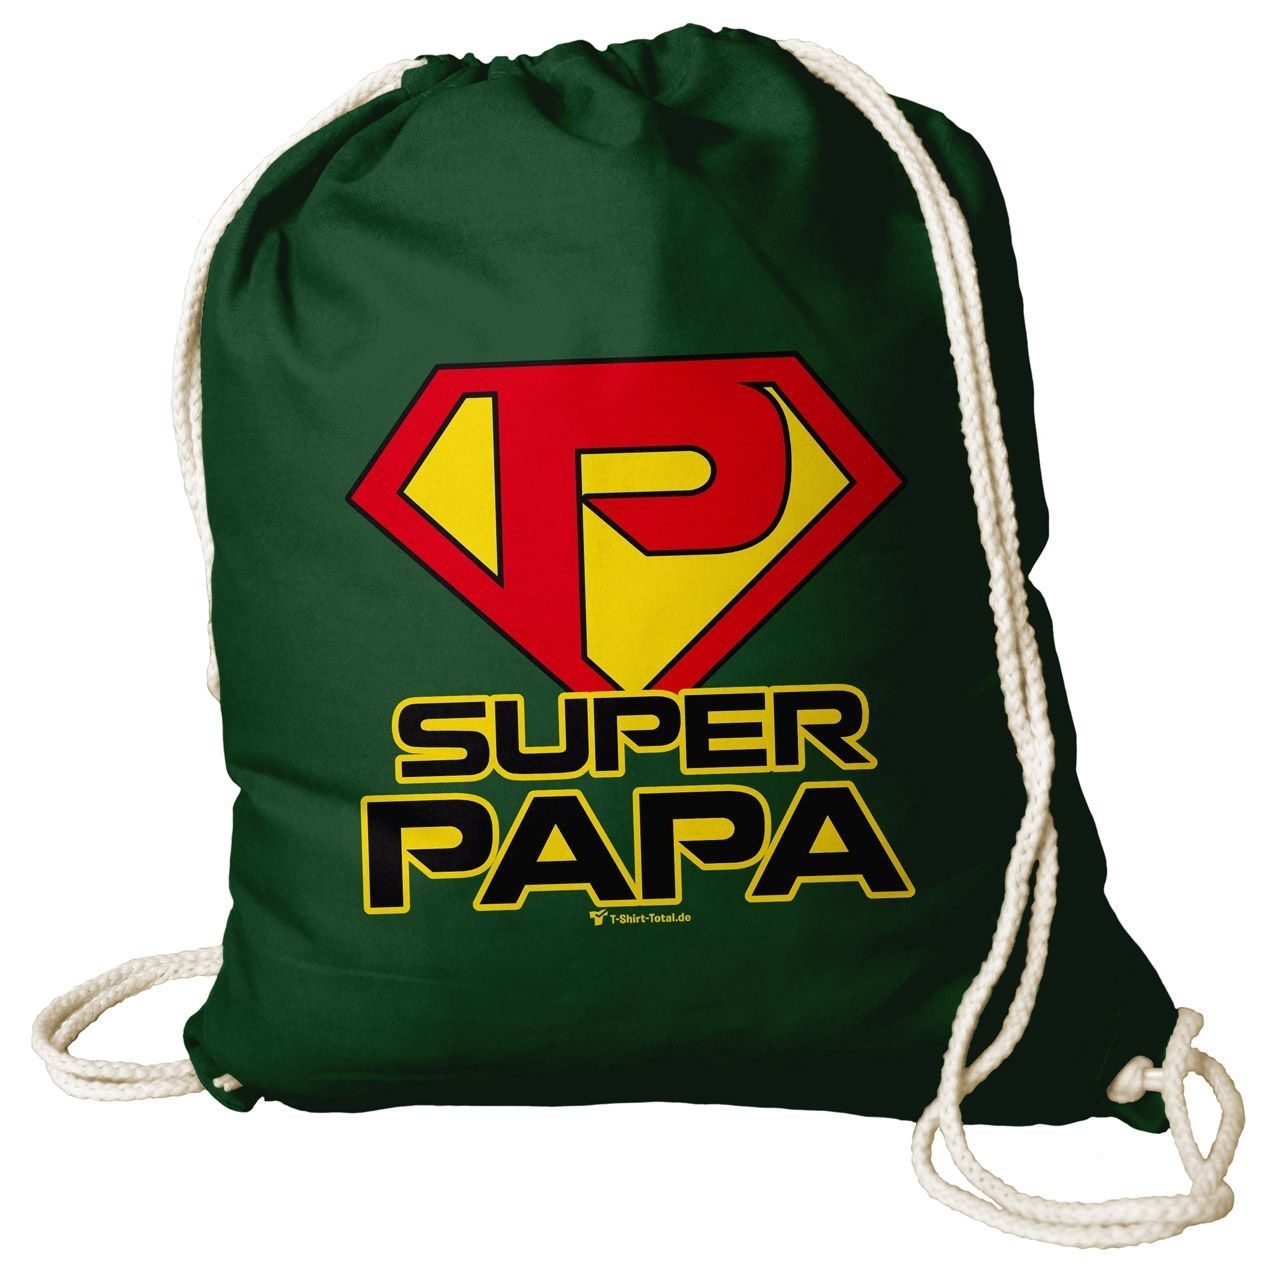 Super Papa Rucksack Beutel dunkelgrün